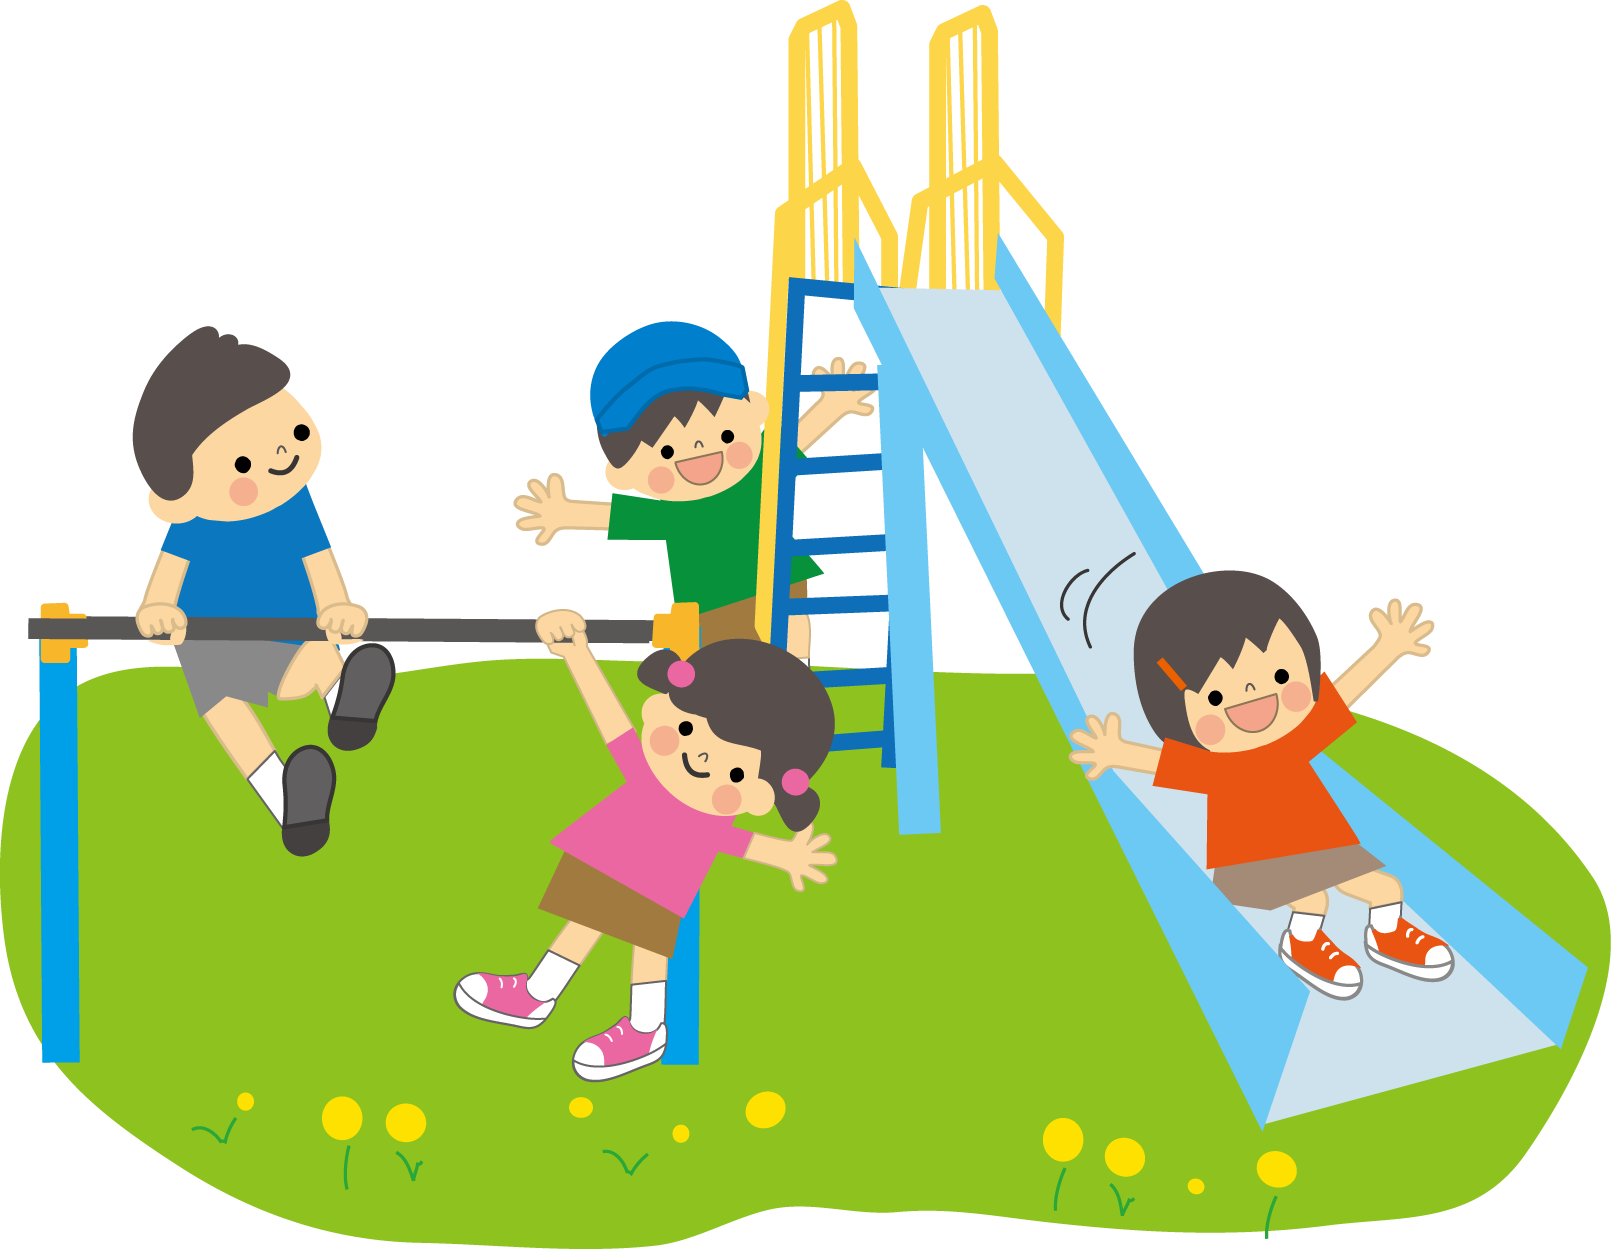 公園の鉄棒で遊ぶ男児と女児と滑り台で遊ぶ男児と女児のイラスト